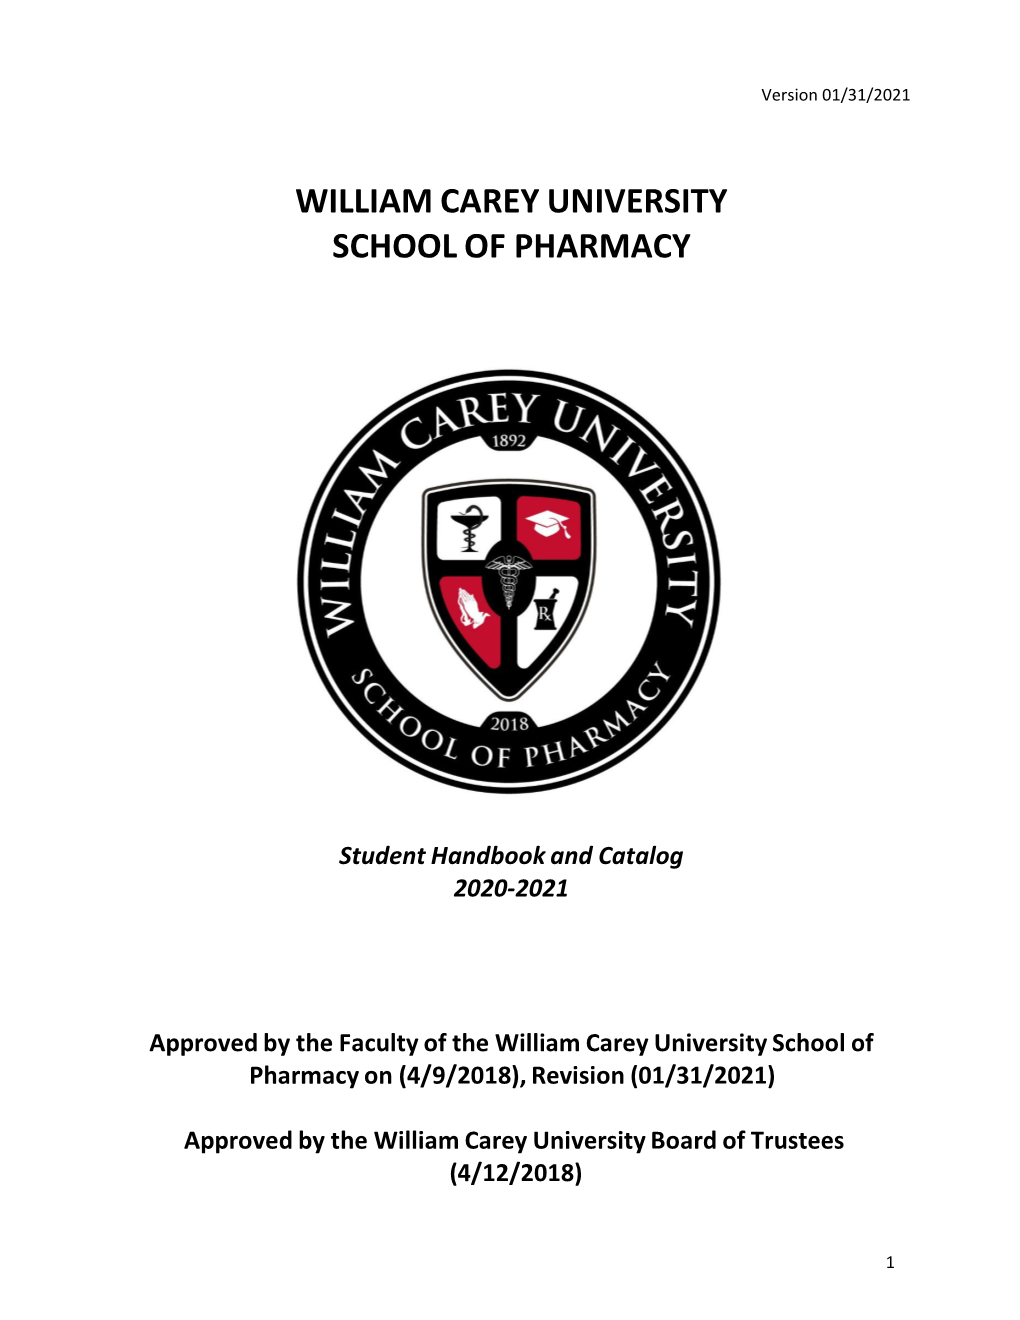 William Carey University School of Pharmacy